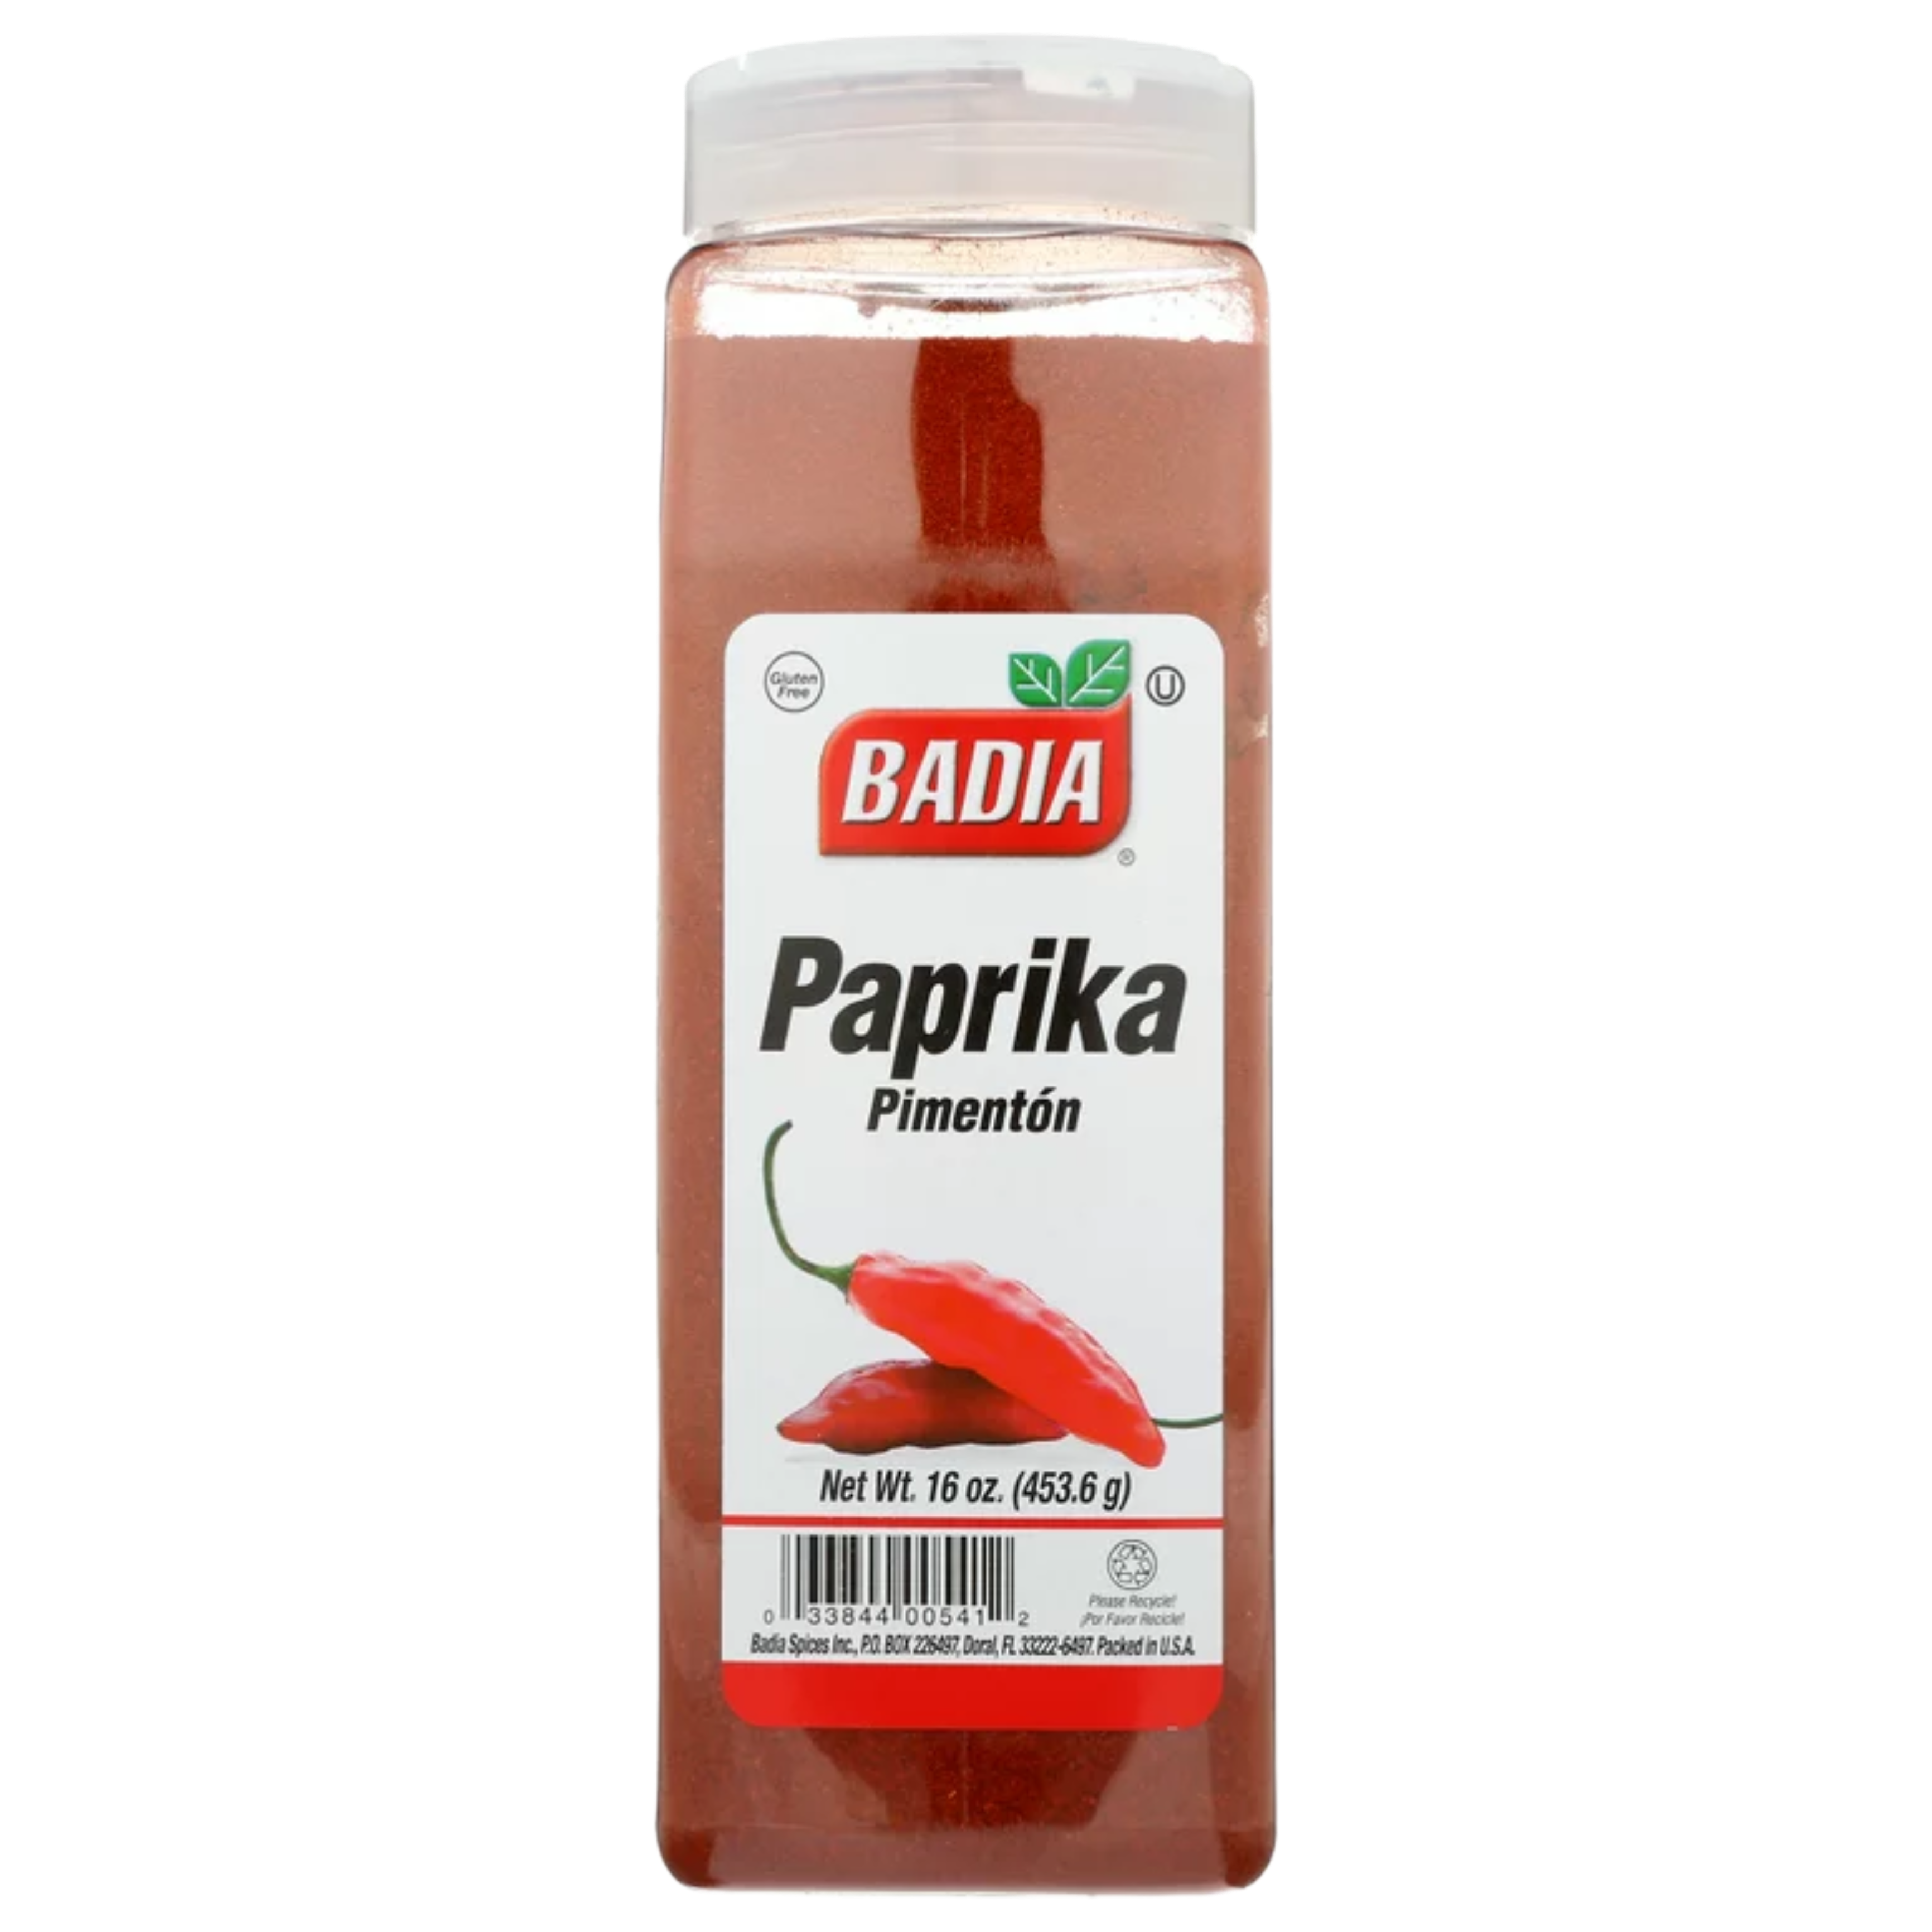 Badia Paprika (6oz)